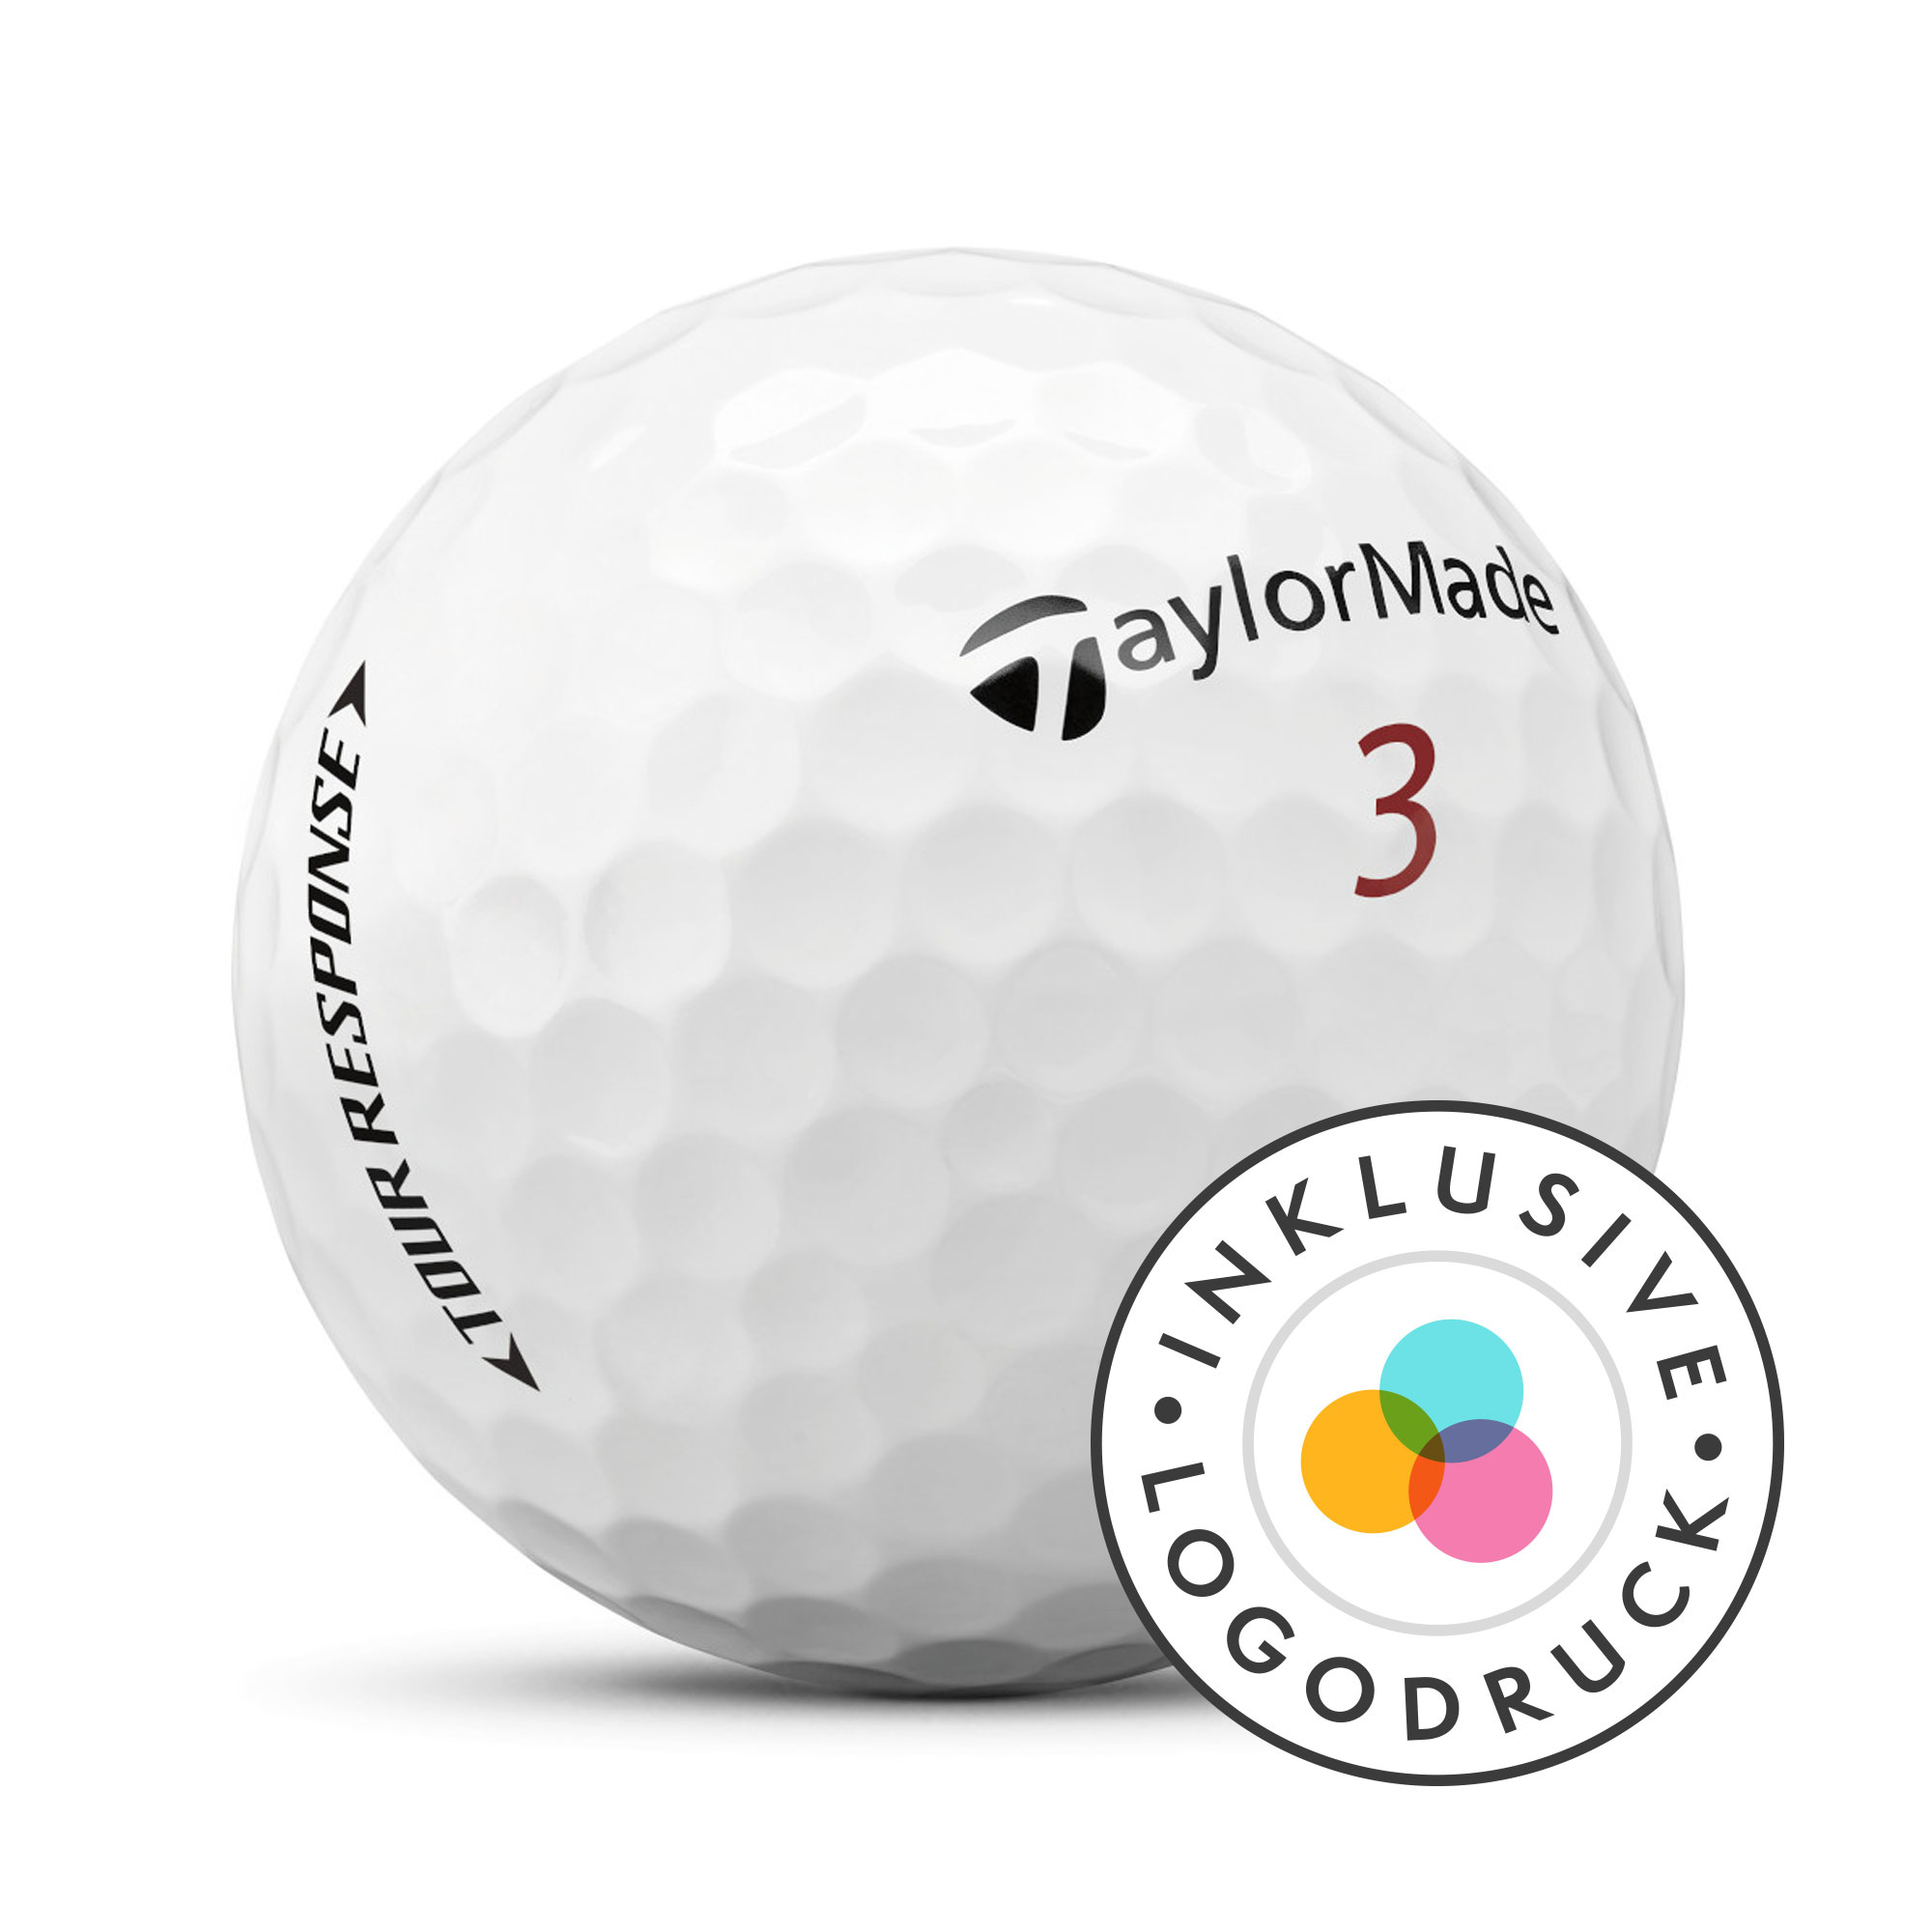 TaylorMade Tour Response Golfbälle bedruckt, weiss (VPE à 12 Bälle)